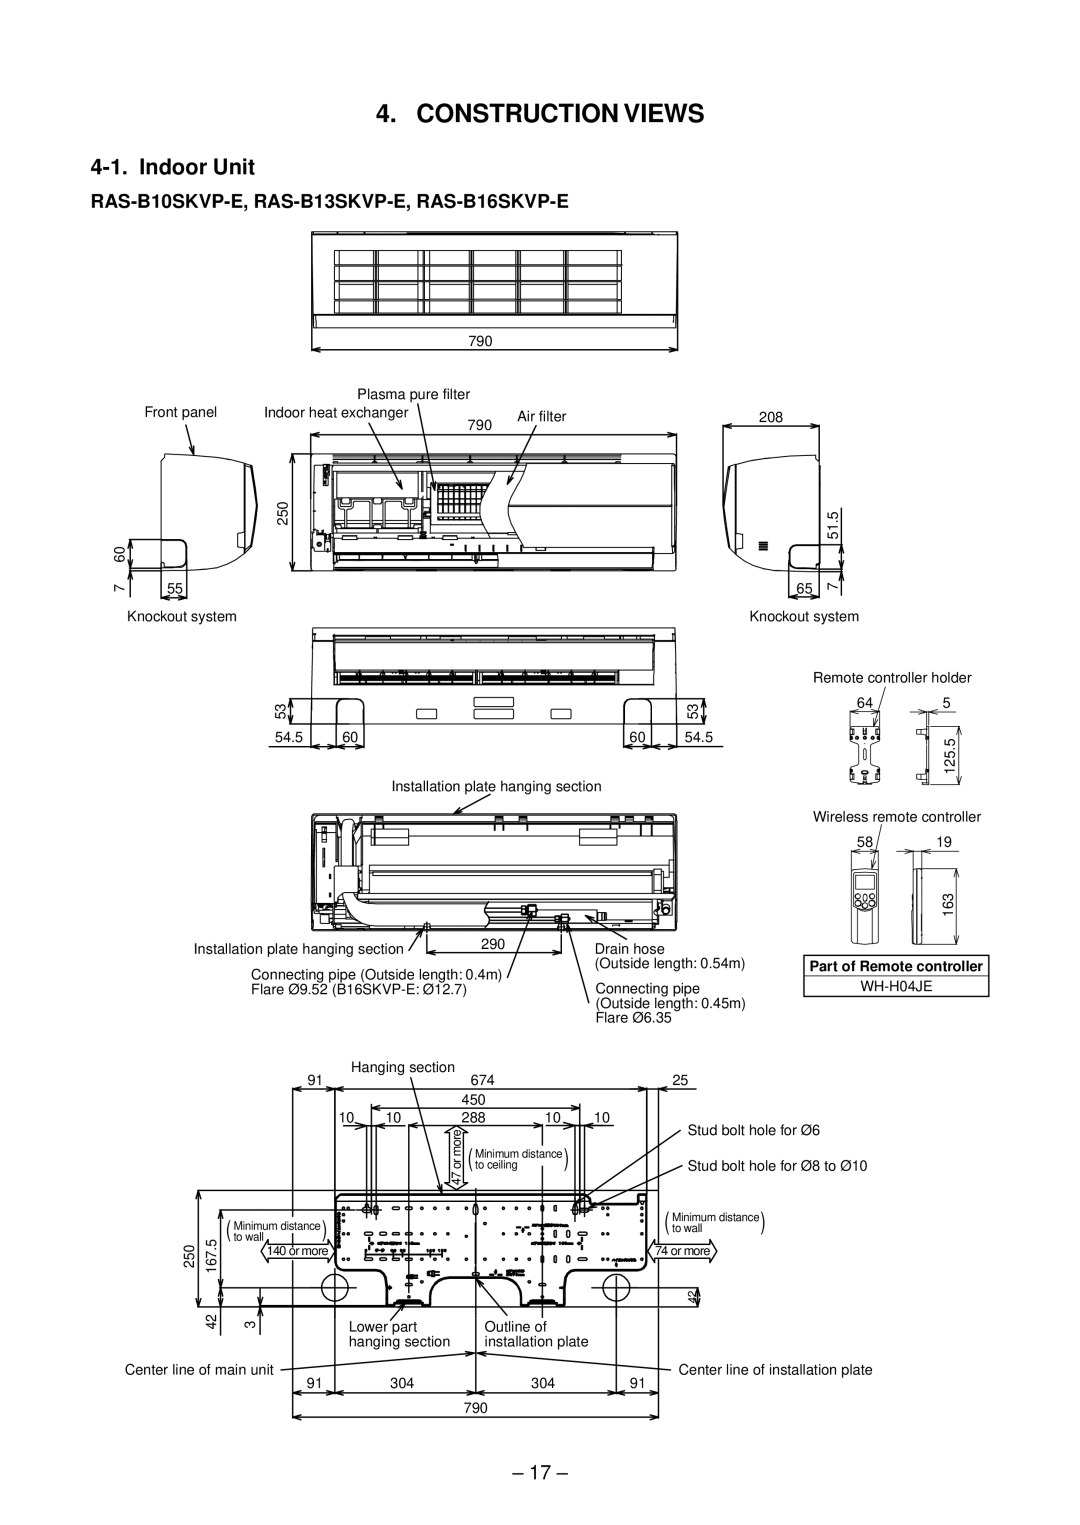 Toshiba RAS-10SAVP-E service manual Construction Views, Indoor Unit, RAS-B10SKVP-E, RAS-B13SKVP-E, RAS-B16SKVP-E 